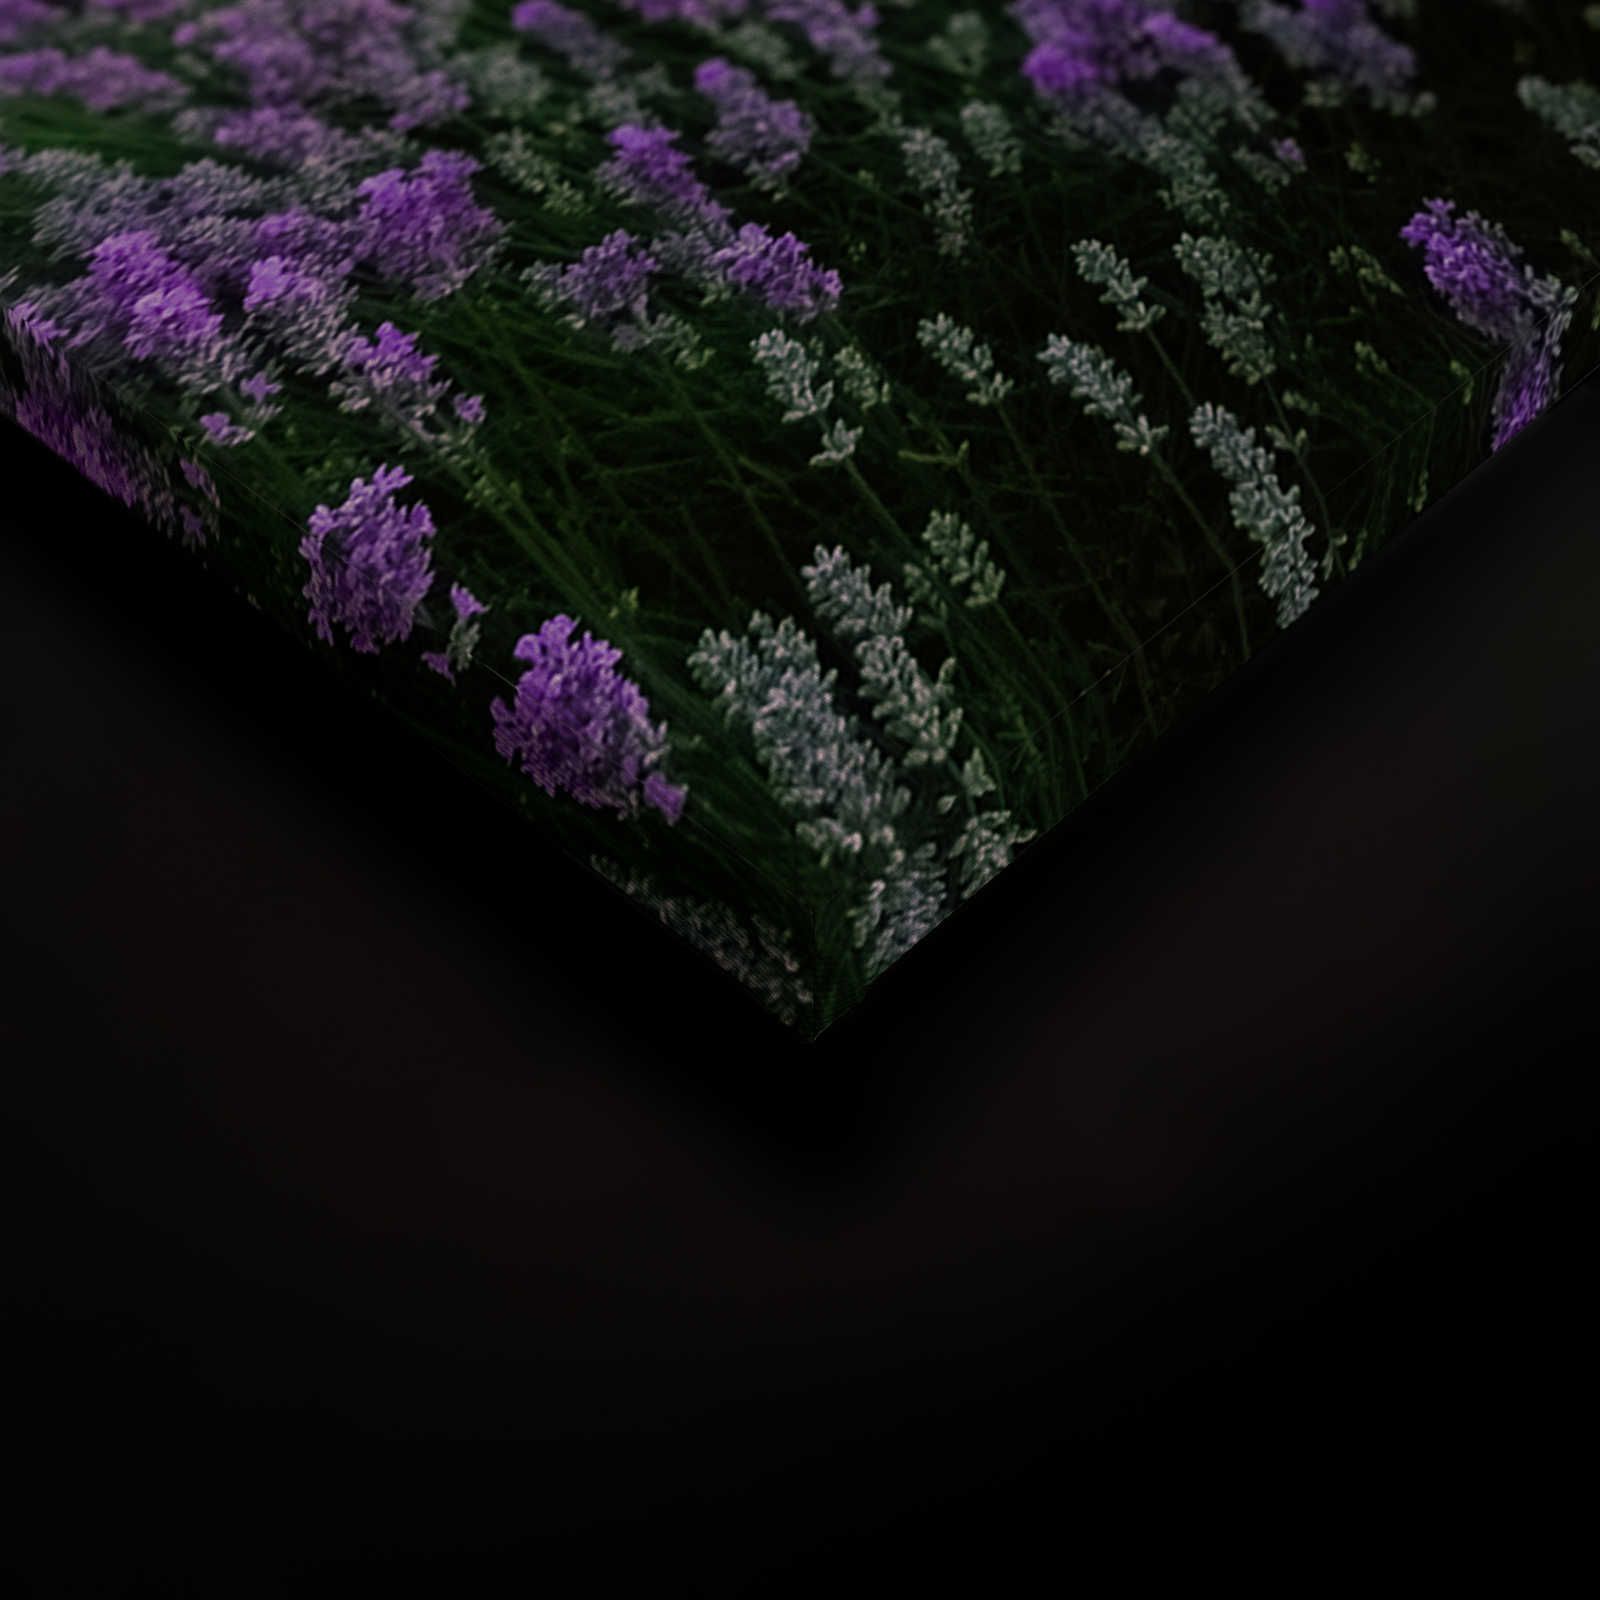             Landscape Canvas Picture with Lavender Field - 1.20 m x 0.80 m
        